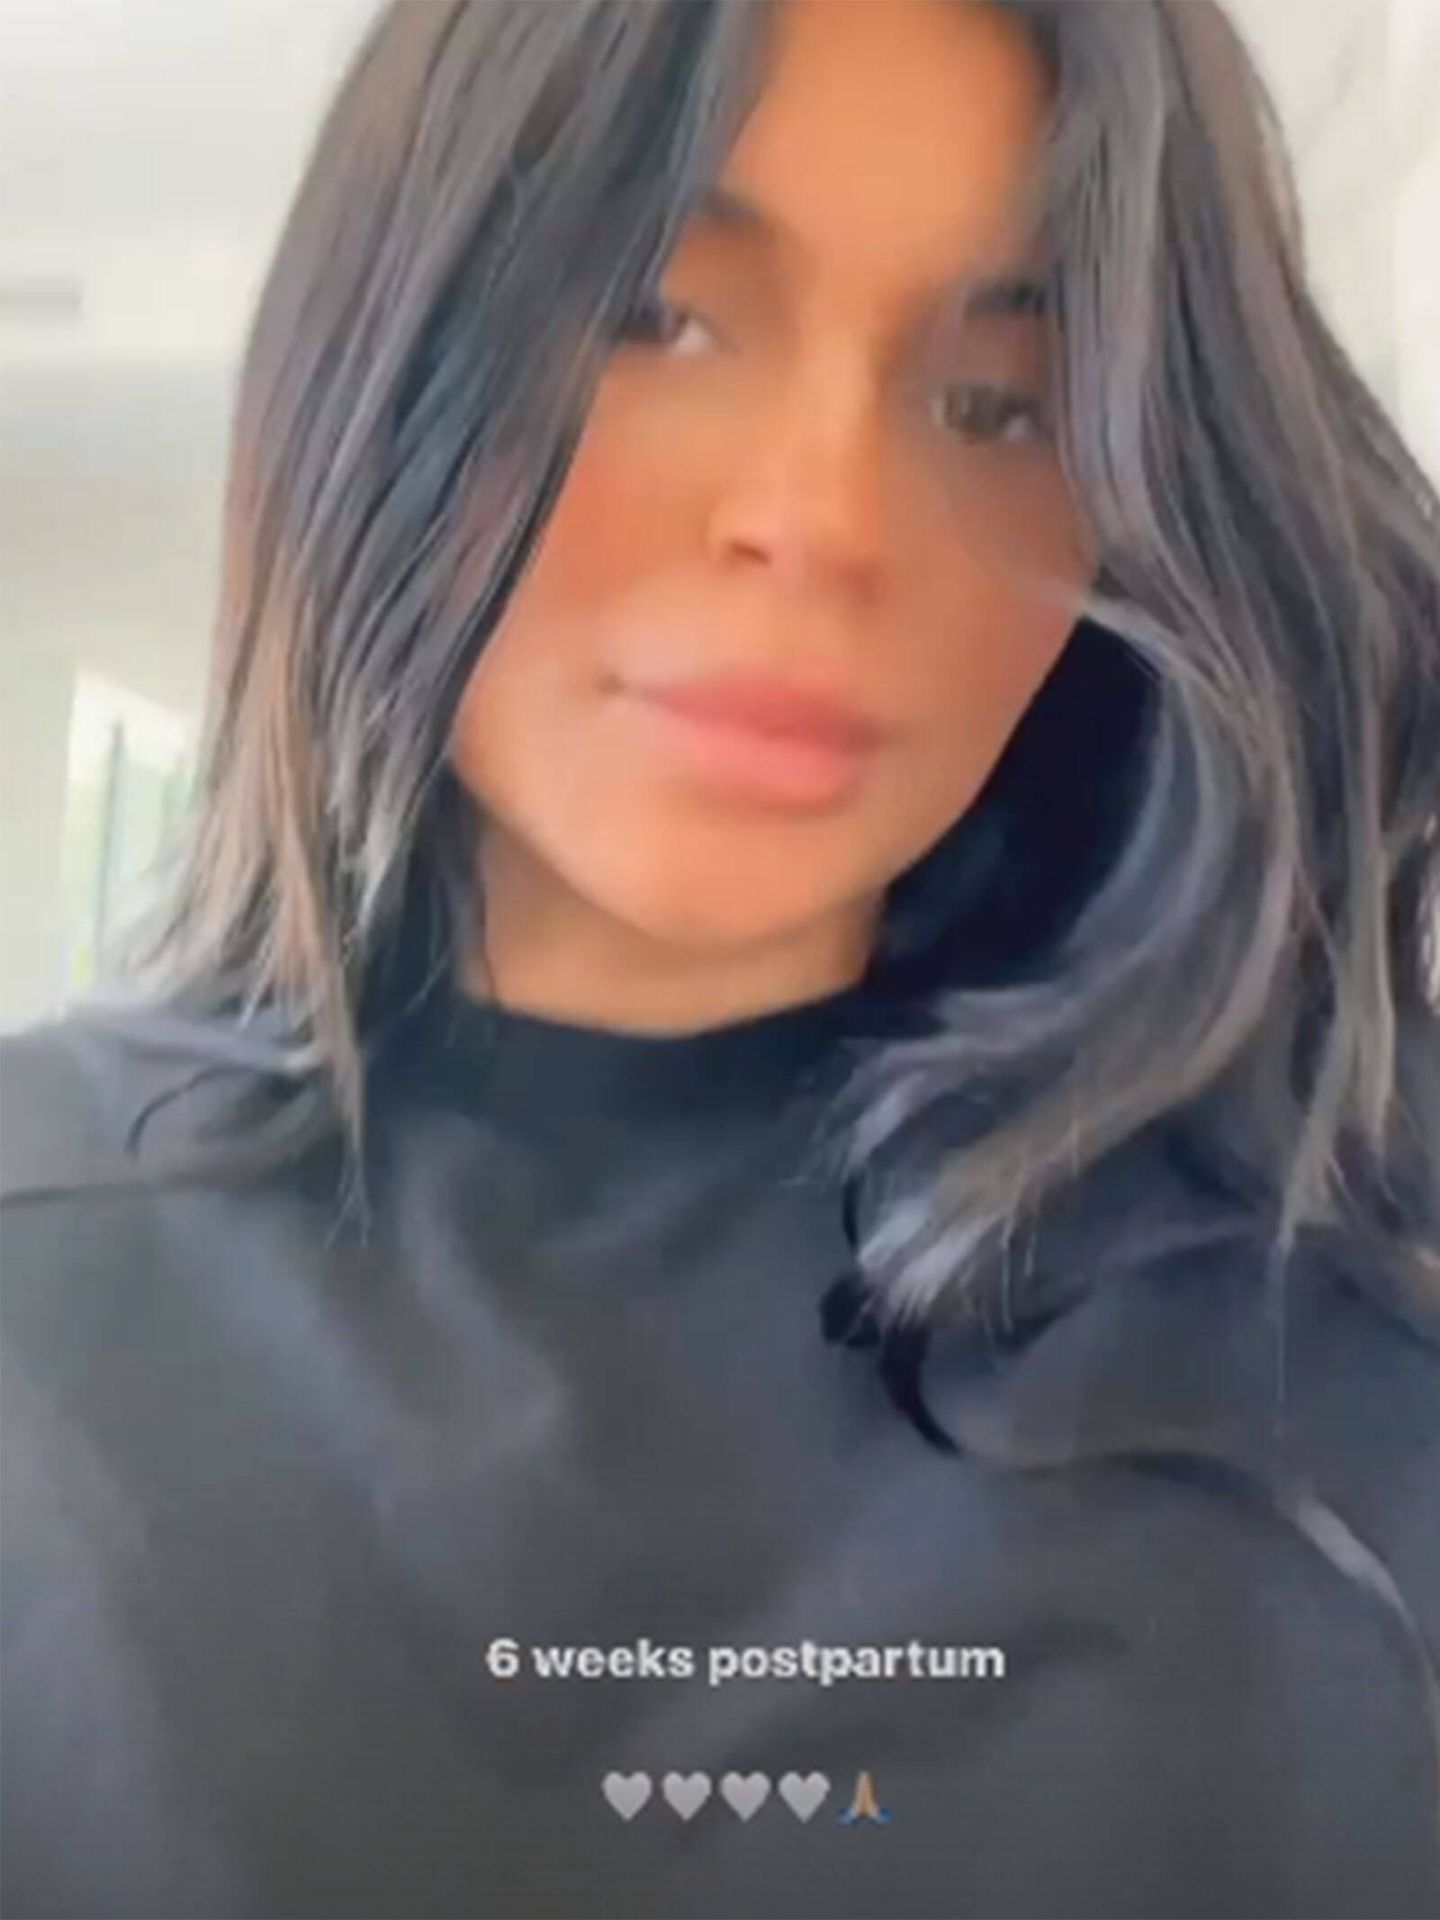 Kylie Jenner habla en sus redes sociales de su posparto. (Instagram/@kyliejenner)